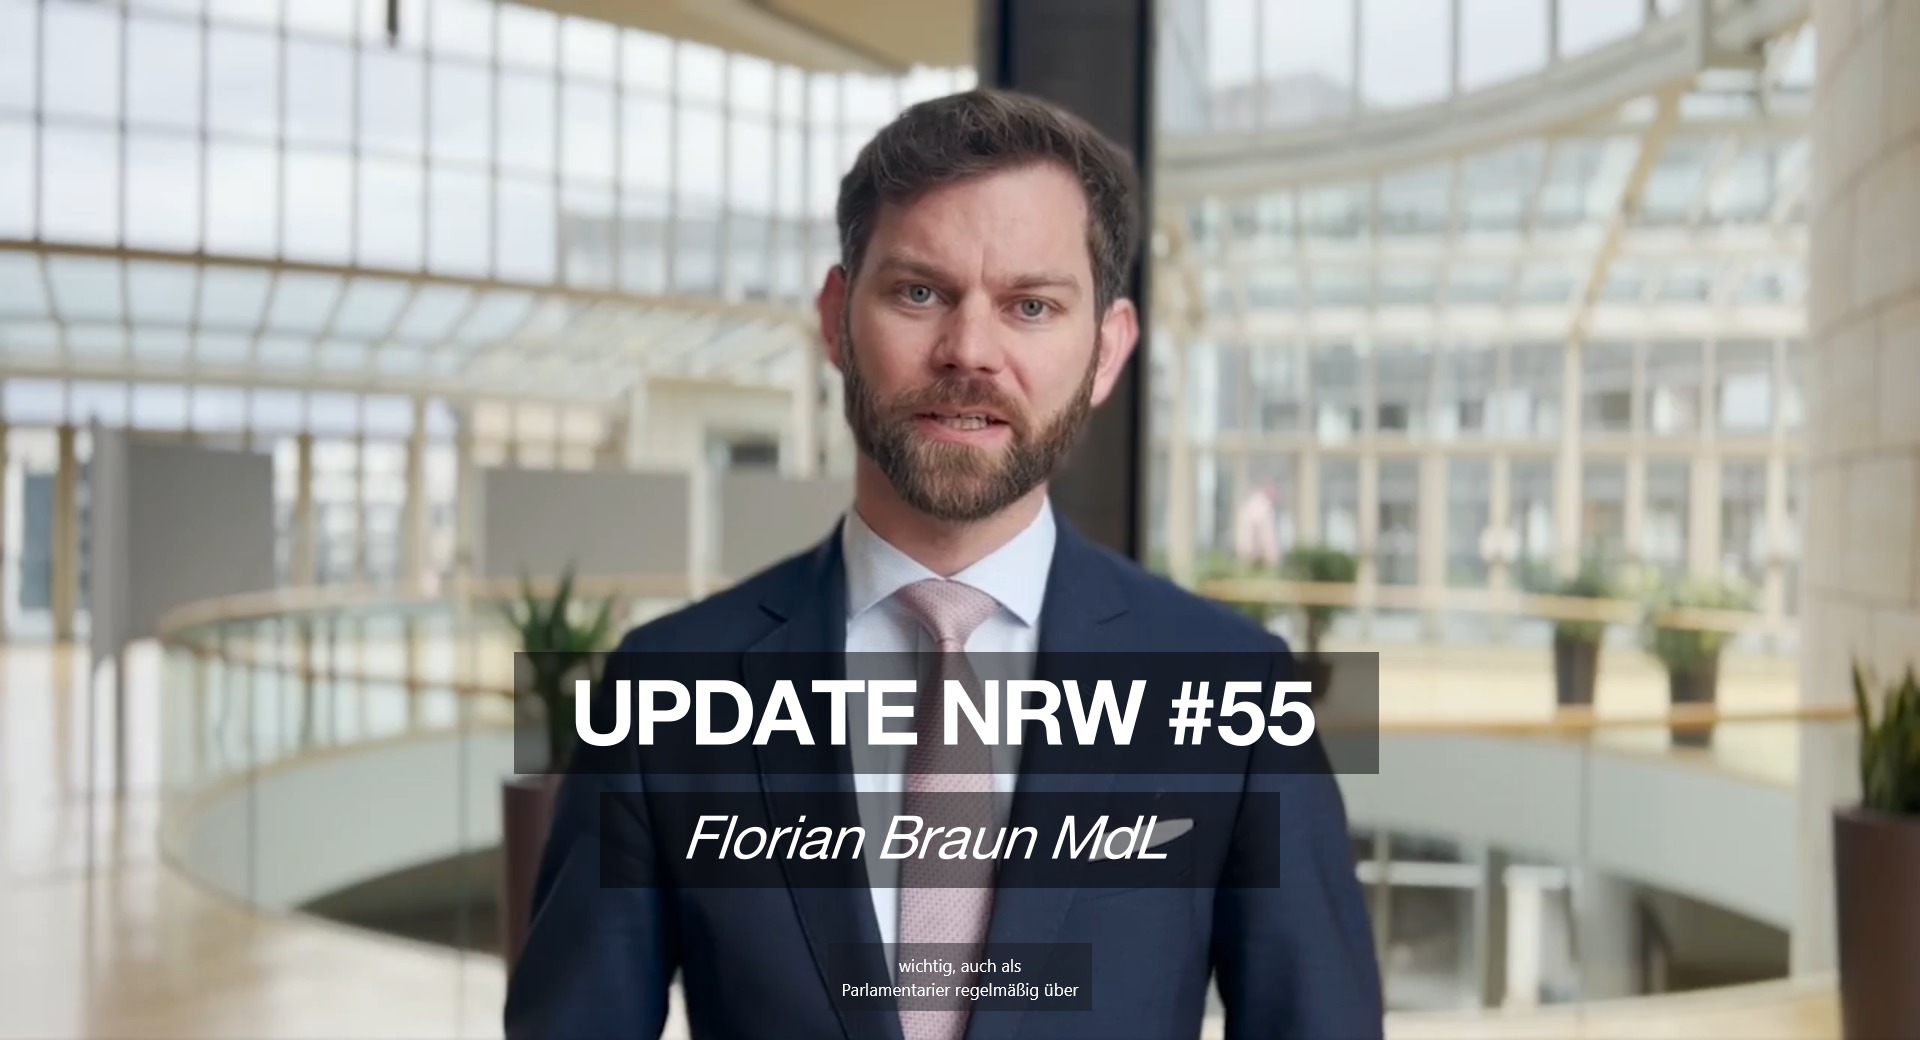 Florian Braun MdL: Update NRW #55